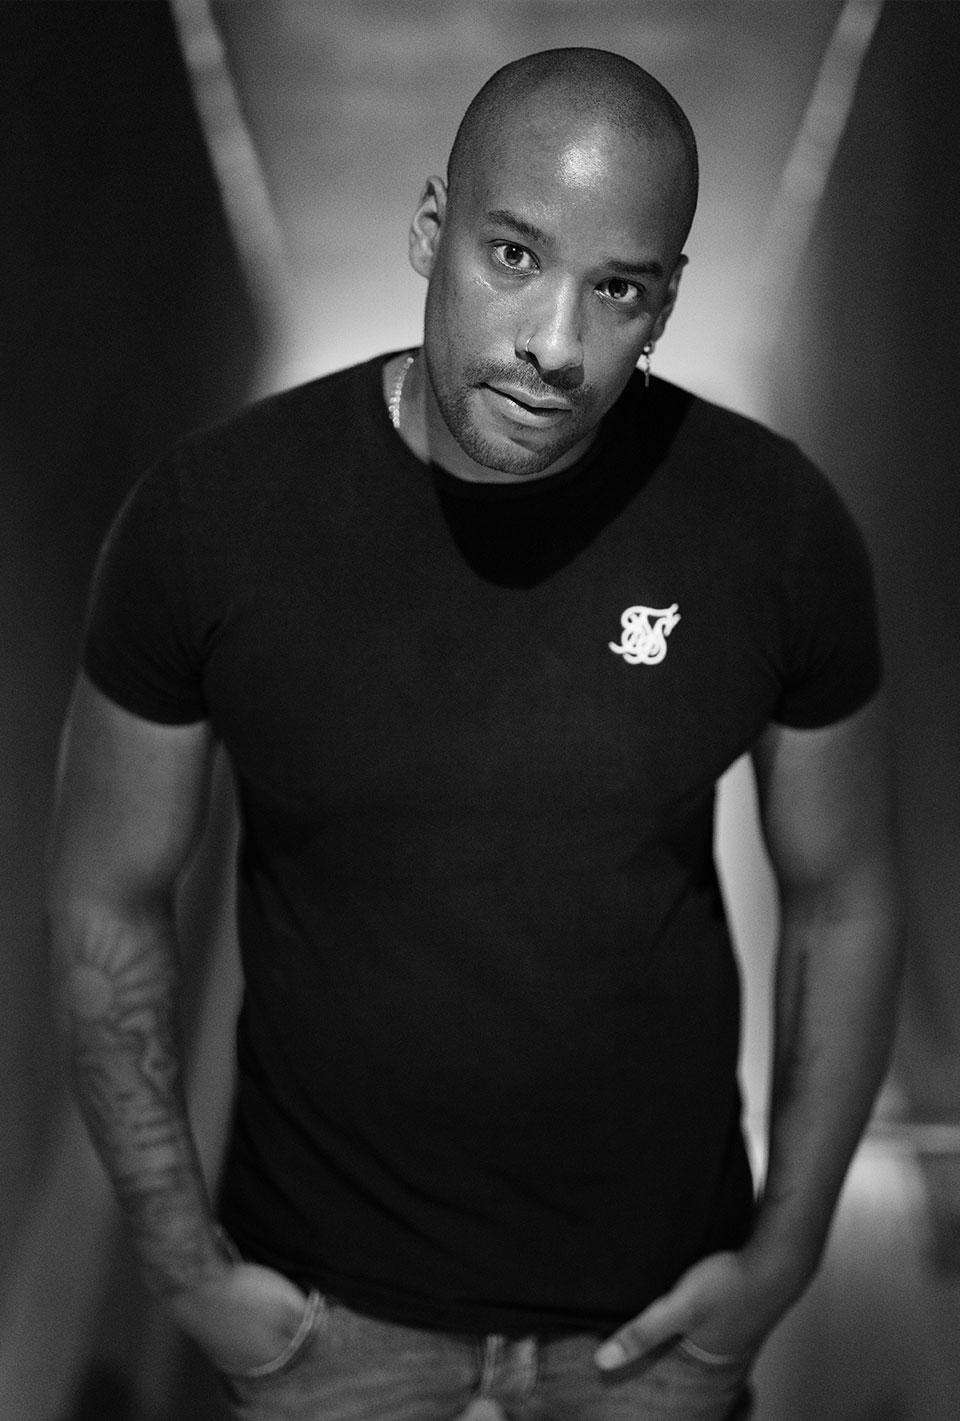 Mann in einem schwarzen T-Shirt, mit den Händen in den Hosentaschen und schaut in die Kamera, Schwarz-Weiß-Fotografie.